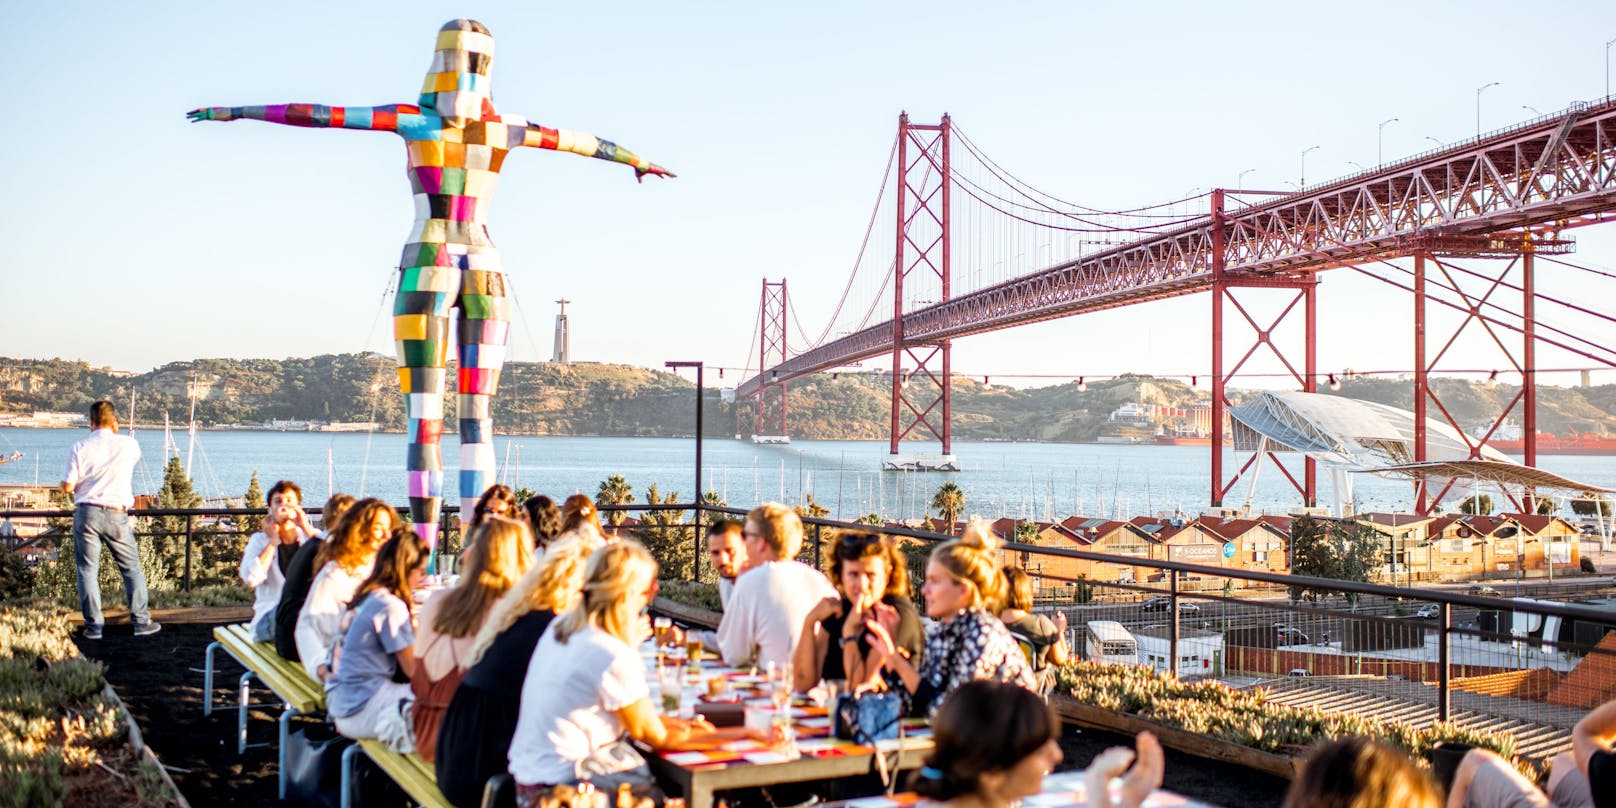 Portugal öffnet wieder seine Restaurants, Bars und Cafés (im Bild; Lissabon)